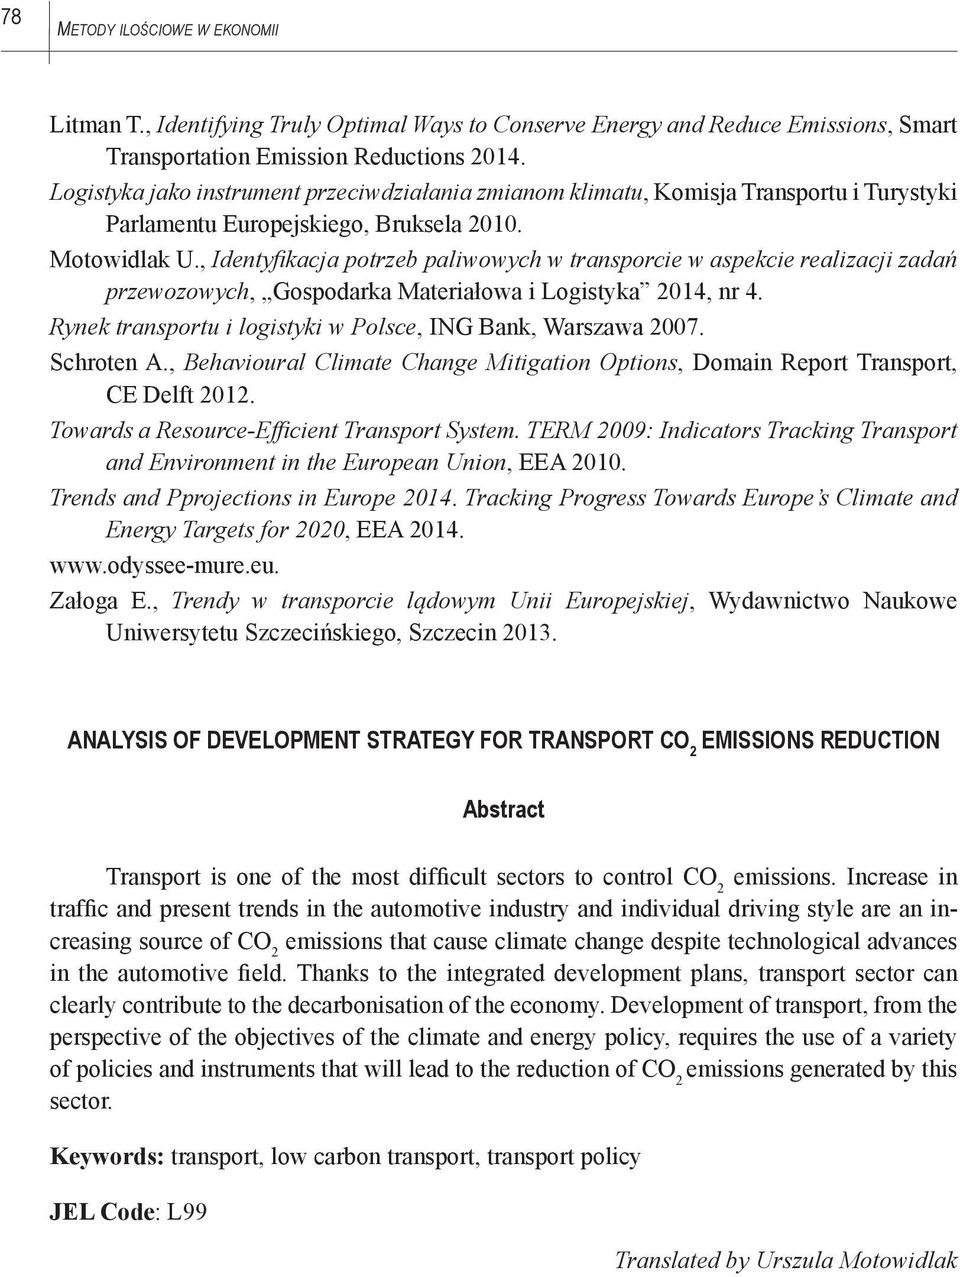 , Identyfikacja potrzeb paliwowych w transporcie w aspekcie realizacji zadań przewozowych, Gospodarka Materiałowa i Logistyka 2014, nr 4.